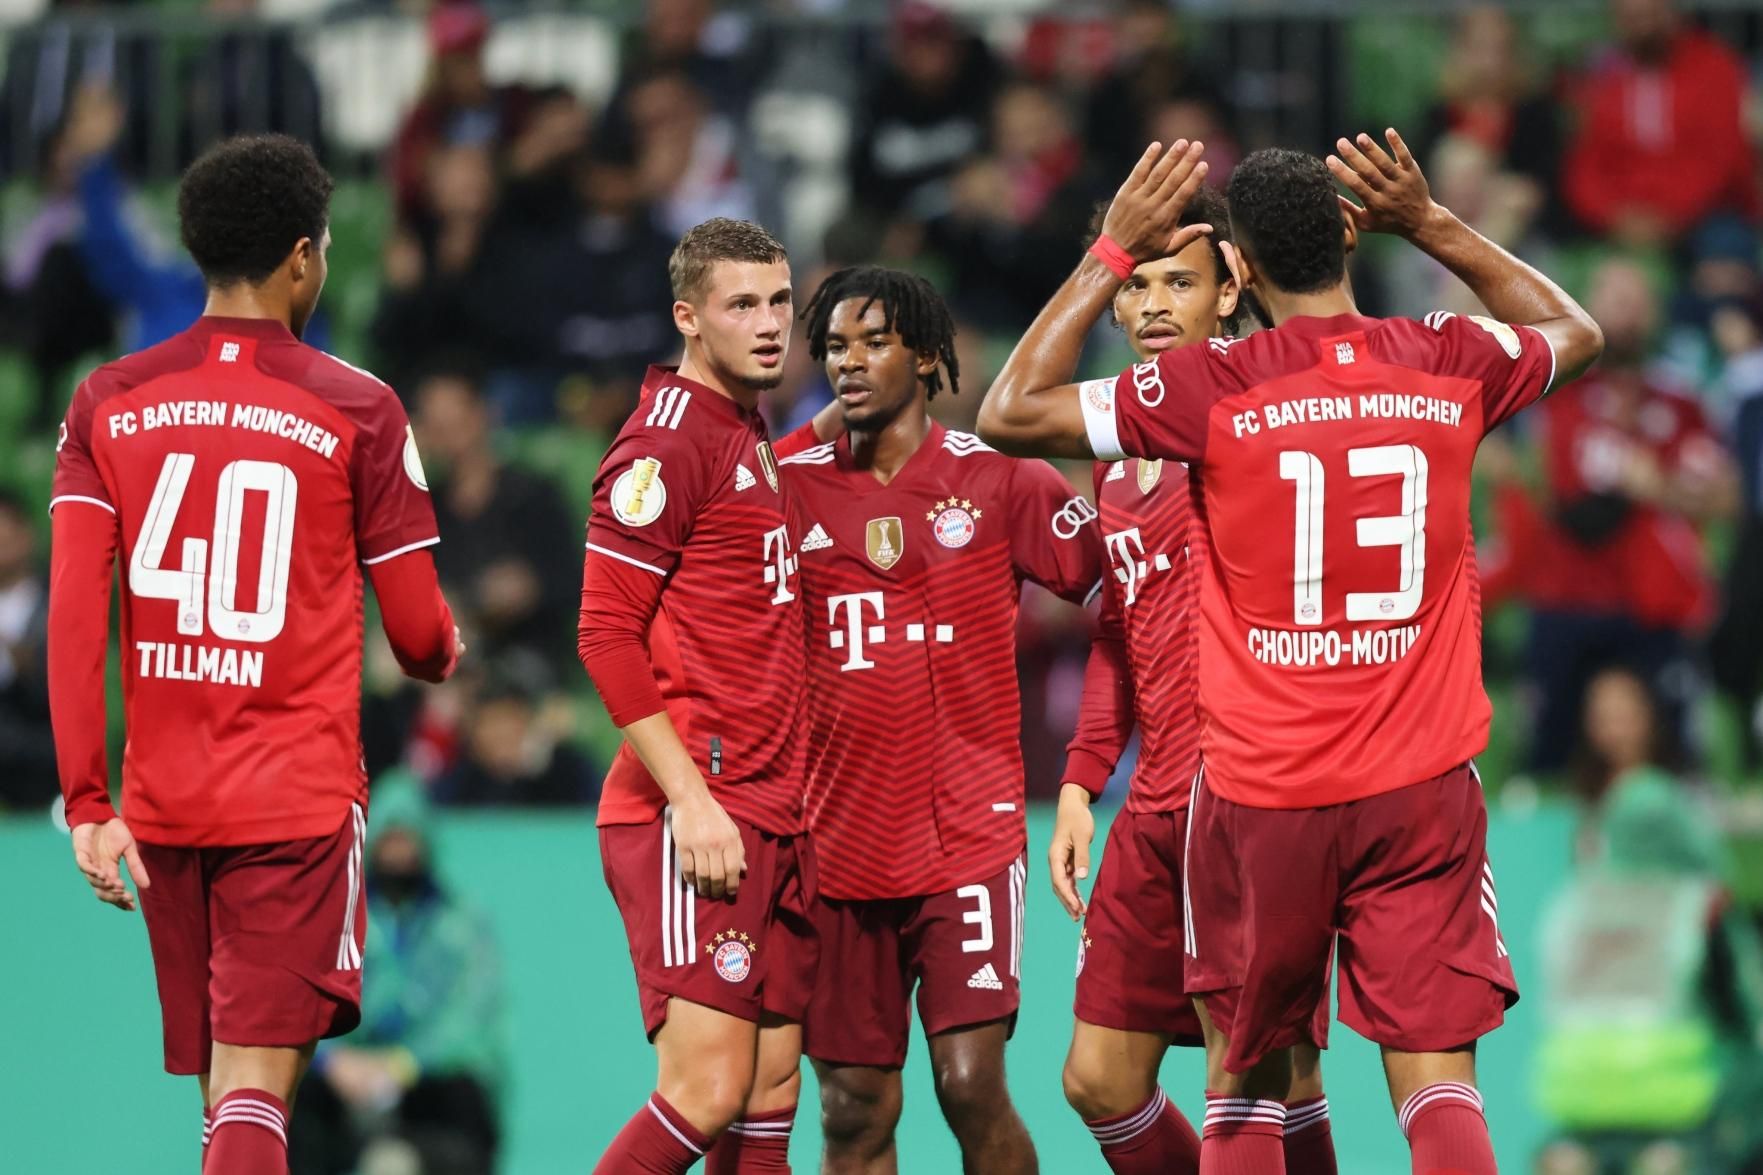 Dortmund atropela Wolfsburg e segue caça ao Bayern na Bundesliga